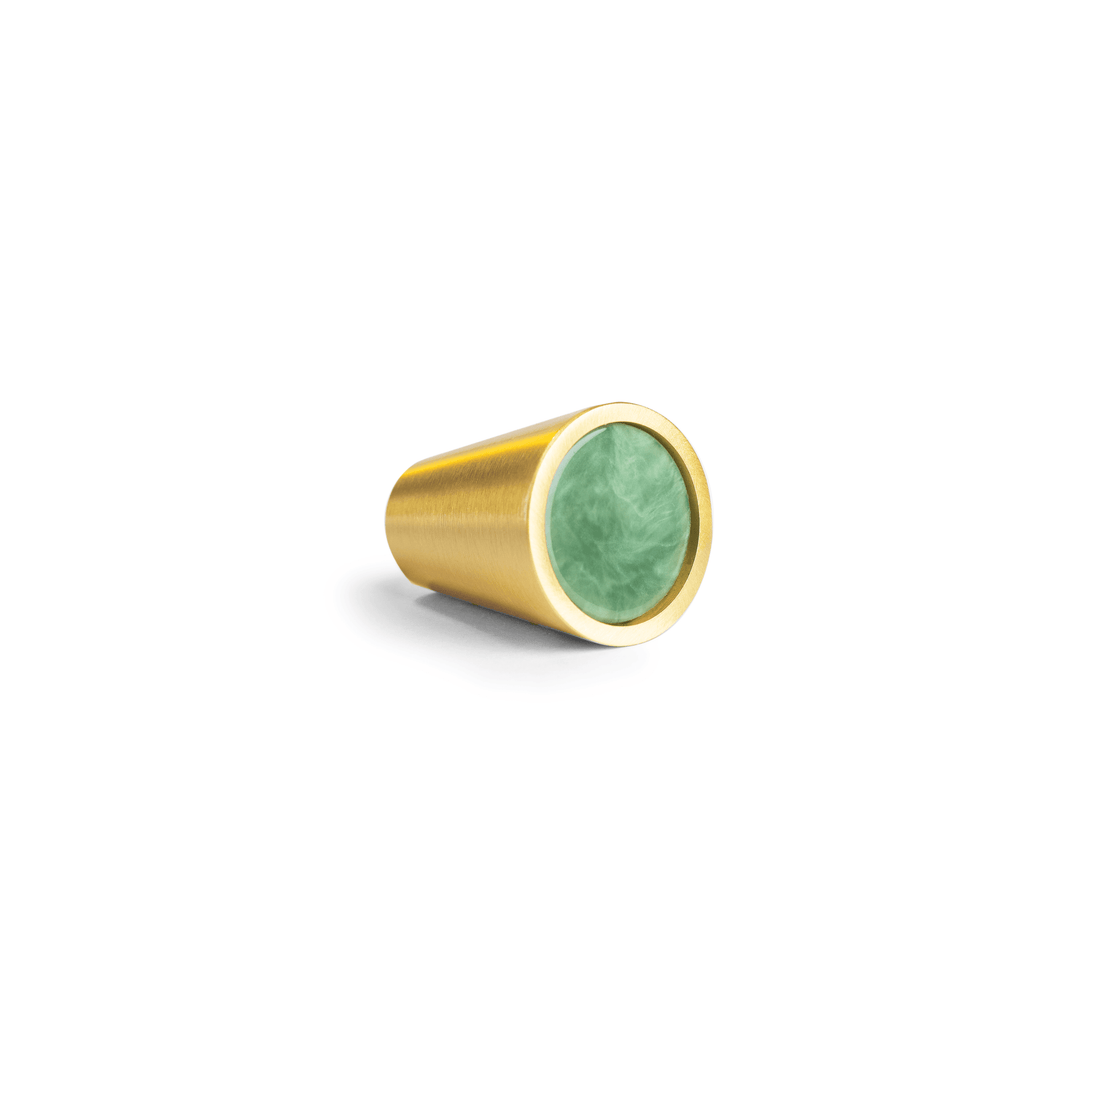 Gemstone Knob Knob 25mm / Green / Marble - M A N T A R A